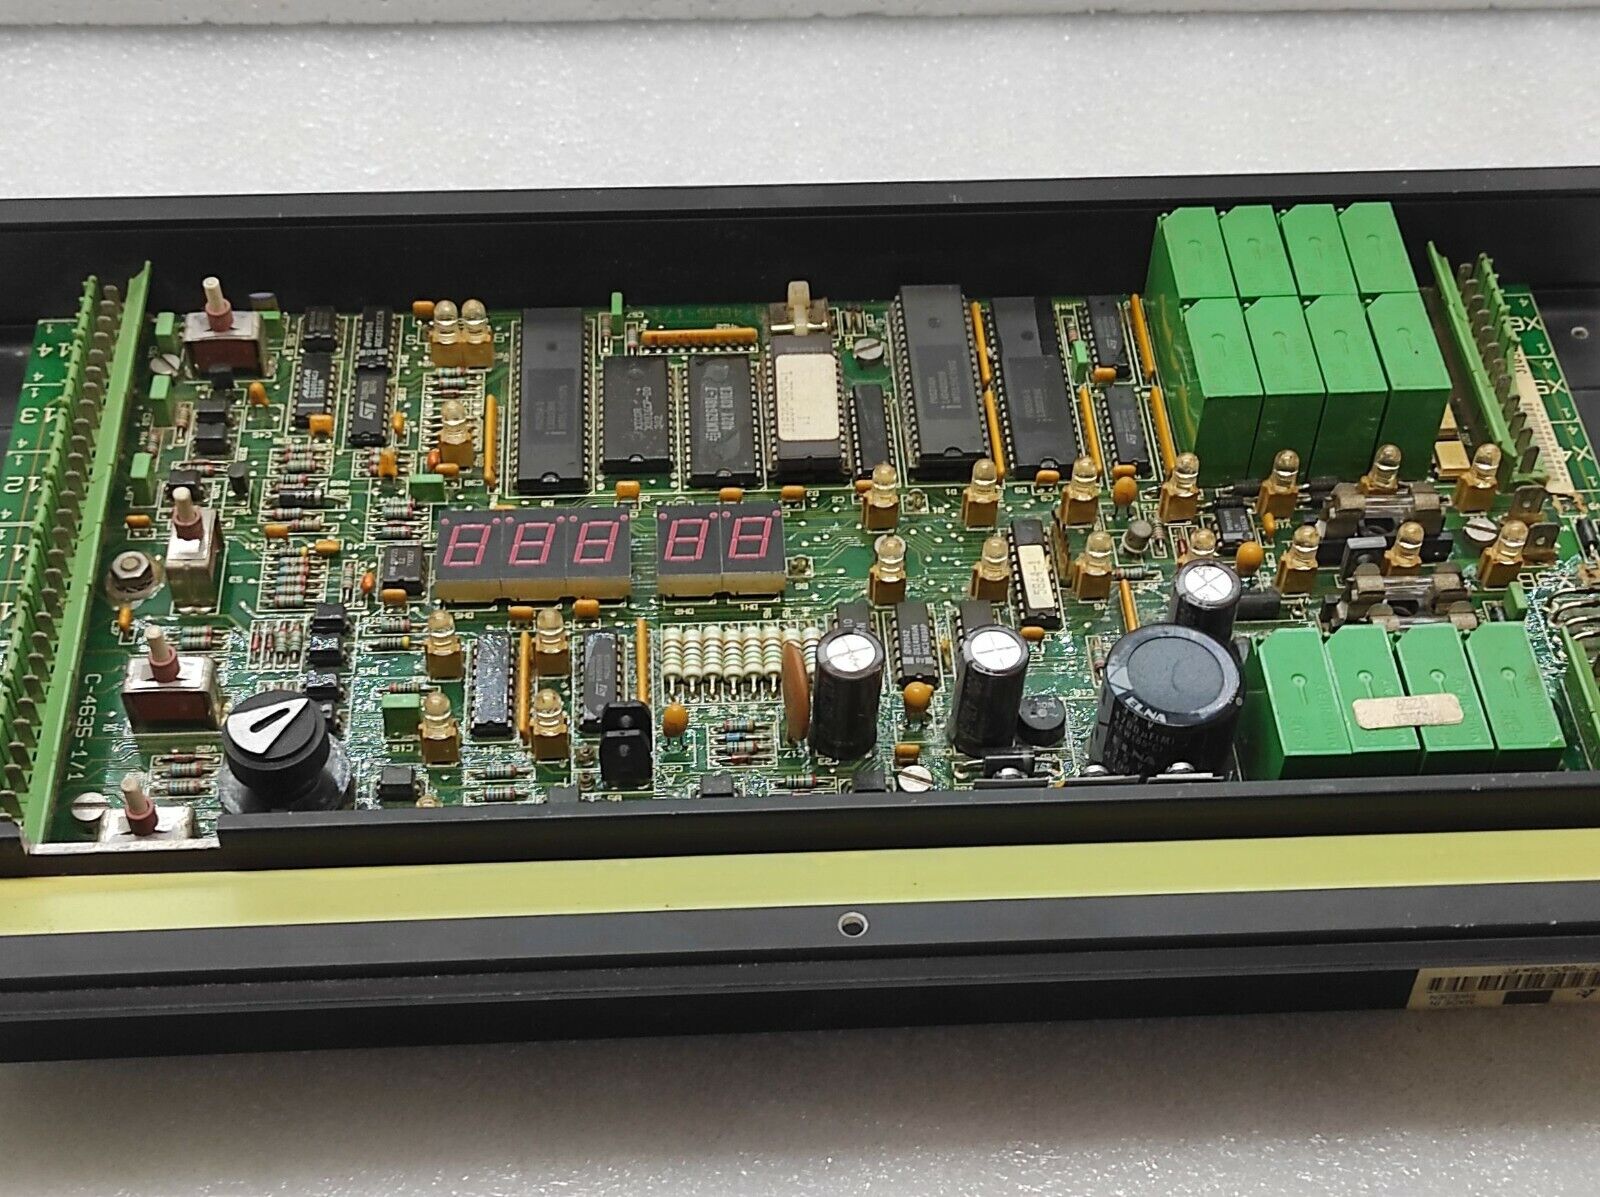 Sattcontrol EPC-41 Control Module 3183050092